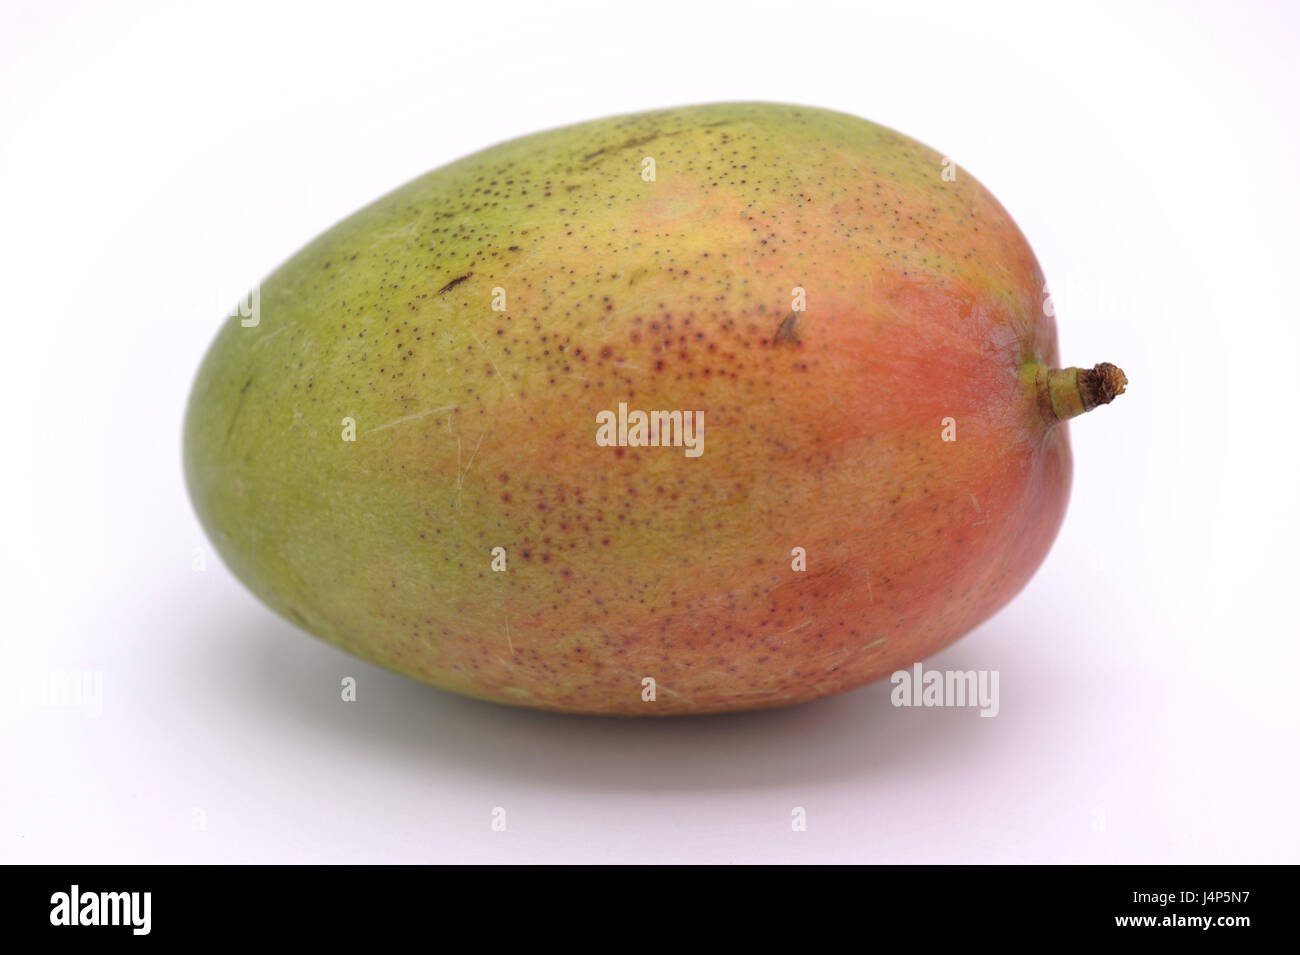 Mango, Mangifera indica, Stock Photo